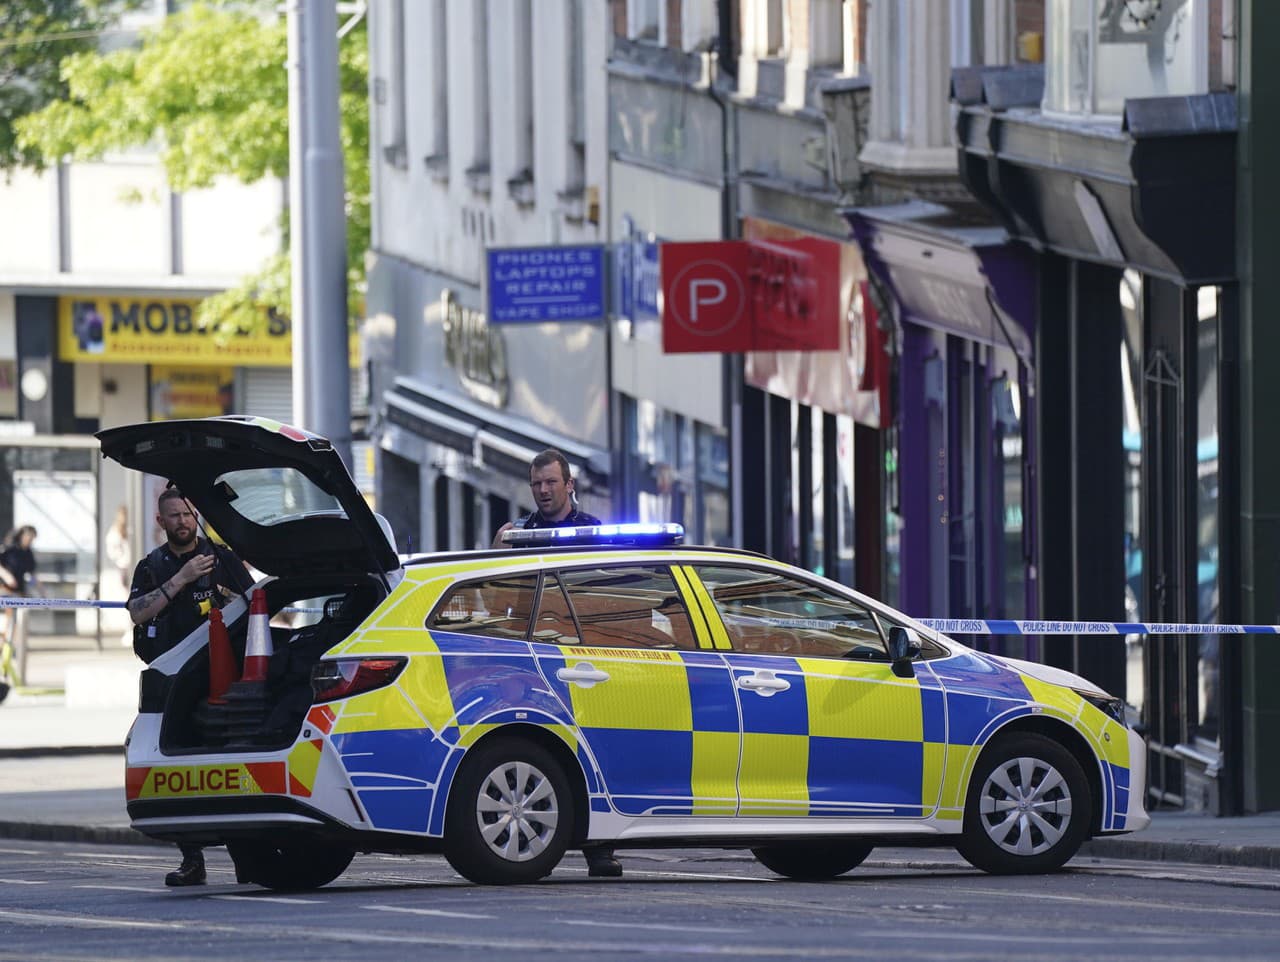 Policajti zadržali muža po náleze troch tiel v Nottinghamu 